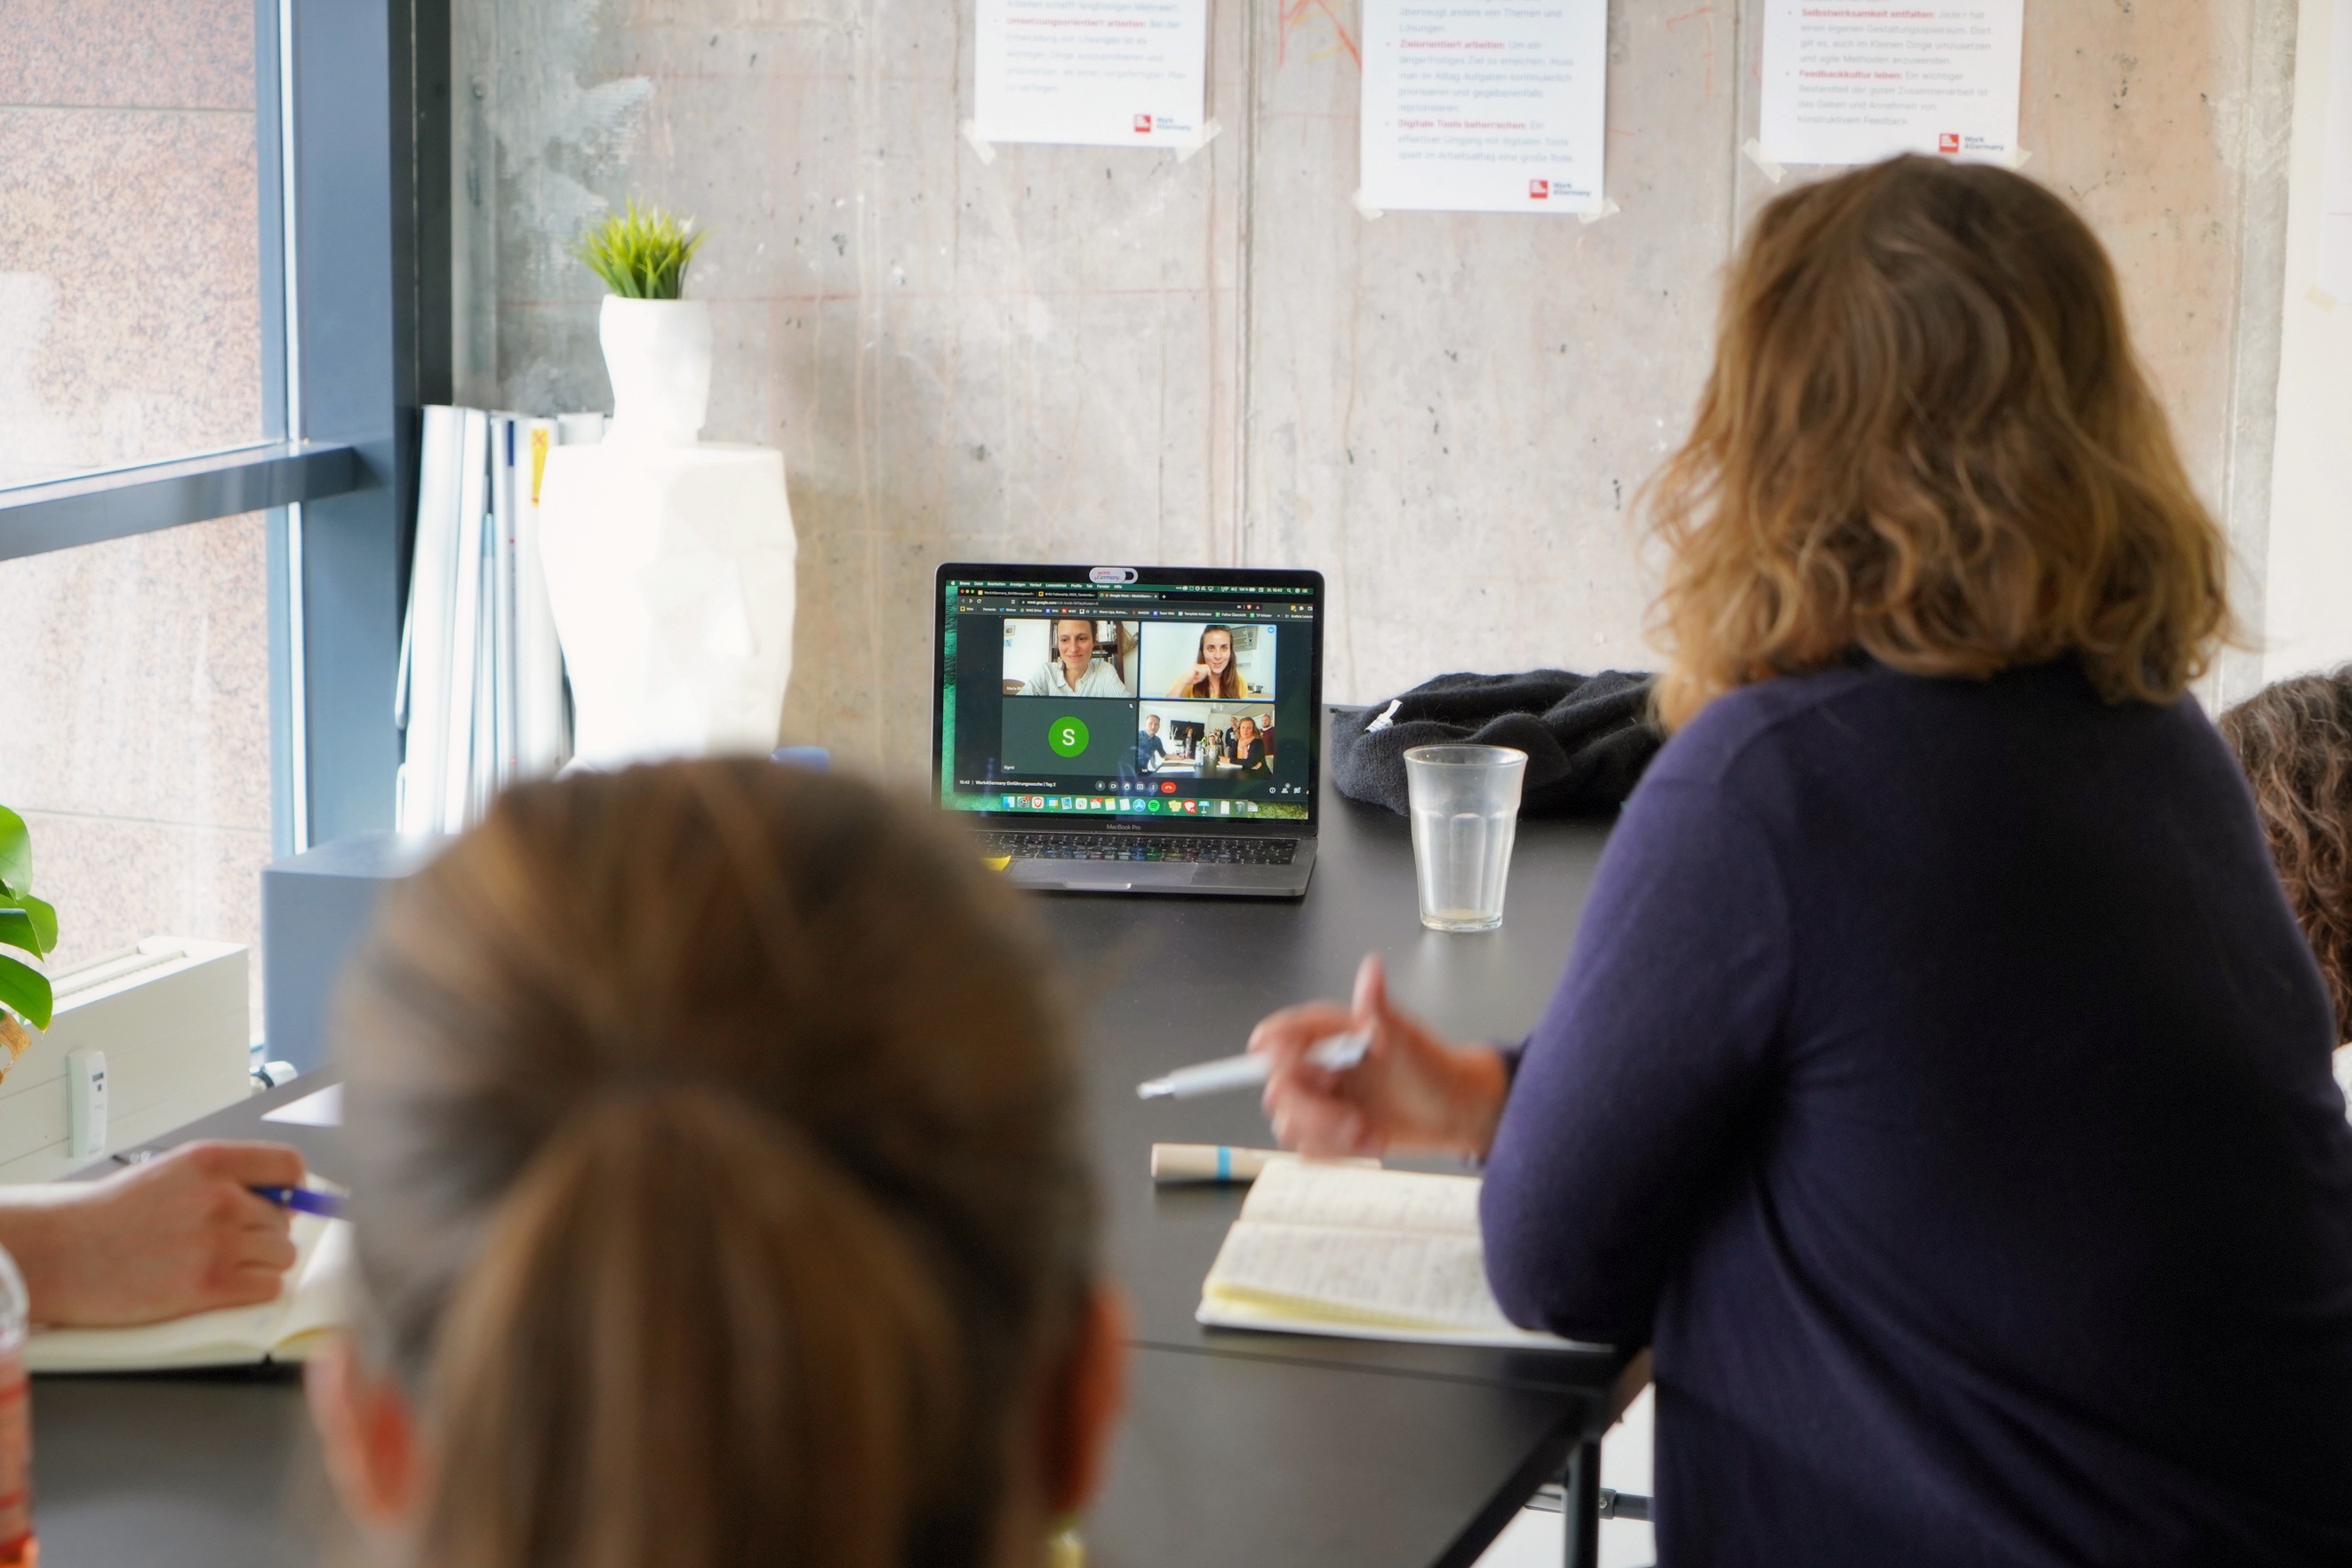 Zwei Personen schauen auf einen Laptop Bildschirm. Dort ist eine typische Videokonferenz abgebildet. In einer Kachel ist dort auch Lisa, die Co-Autorin, zu sehen.